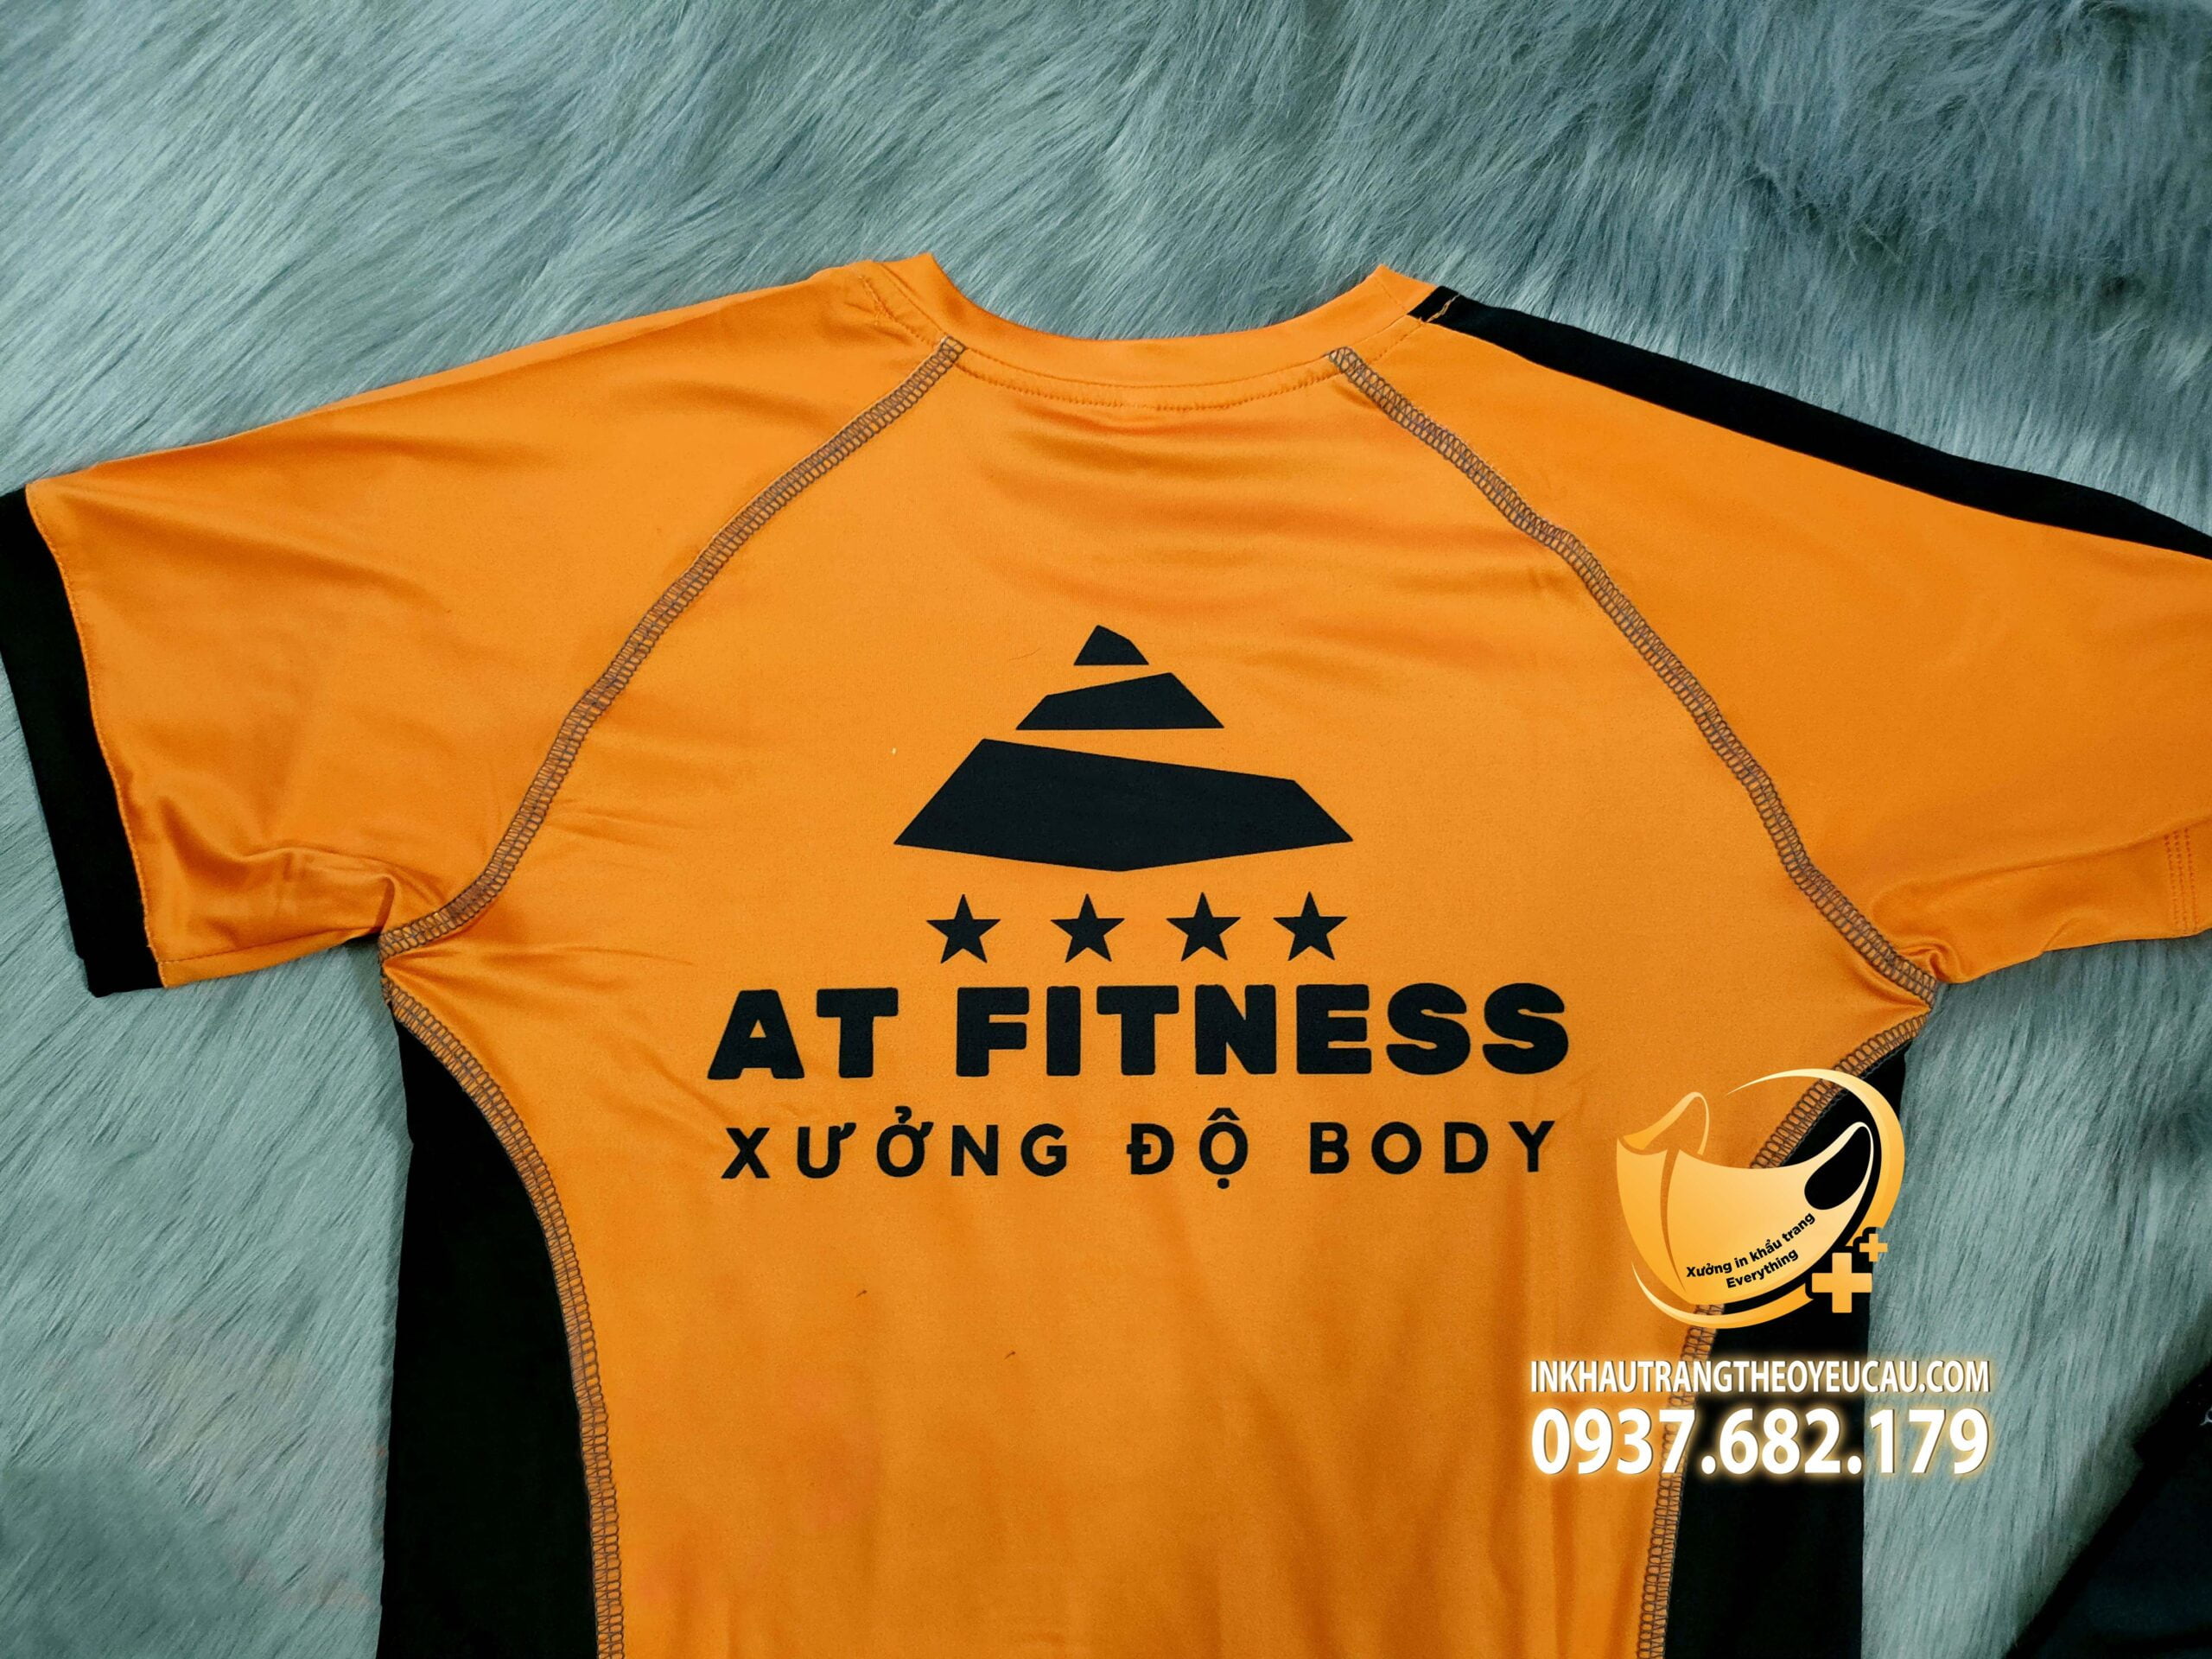 logo sau lưng áo đồng phục pt At fitness xưởng độ body màu cam